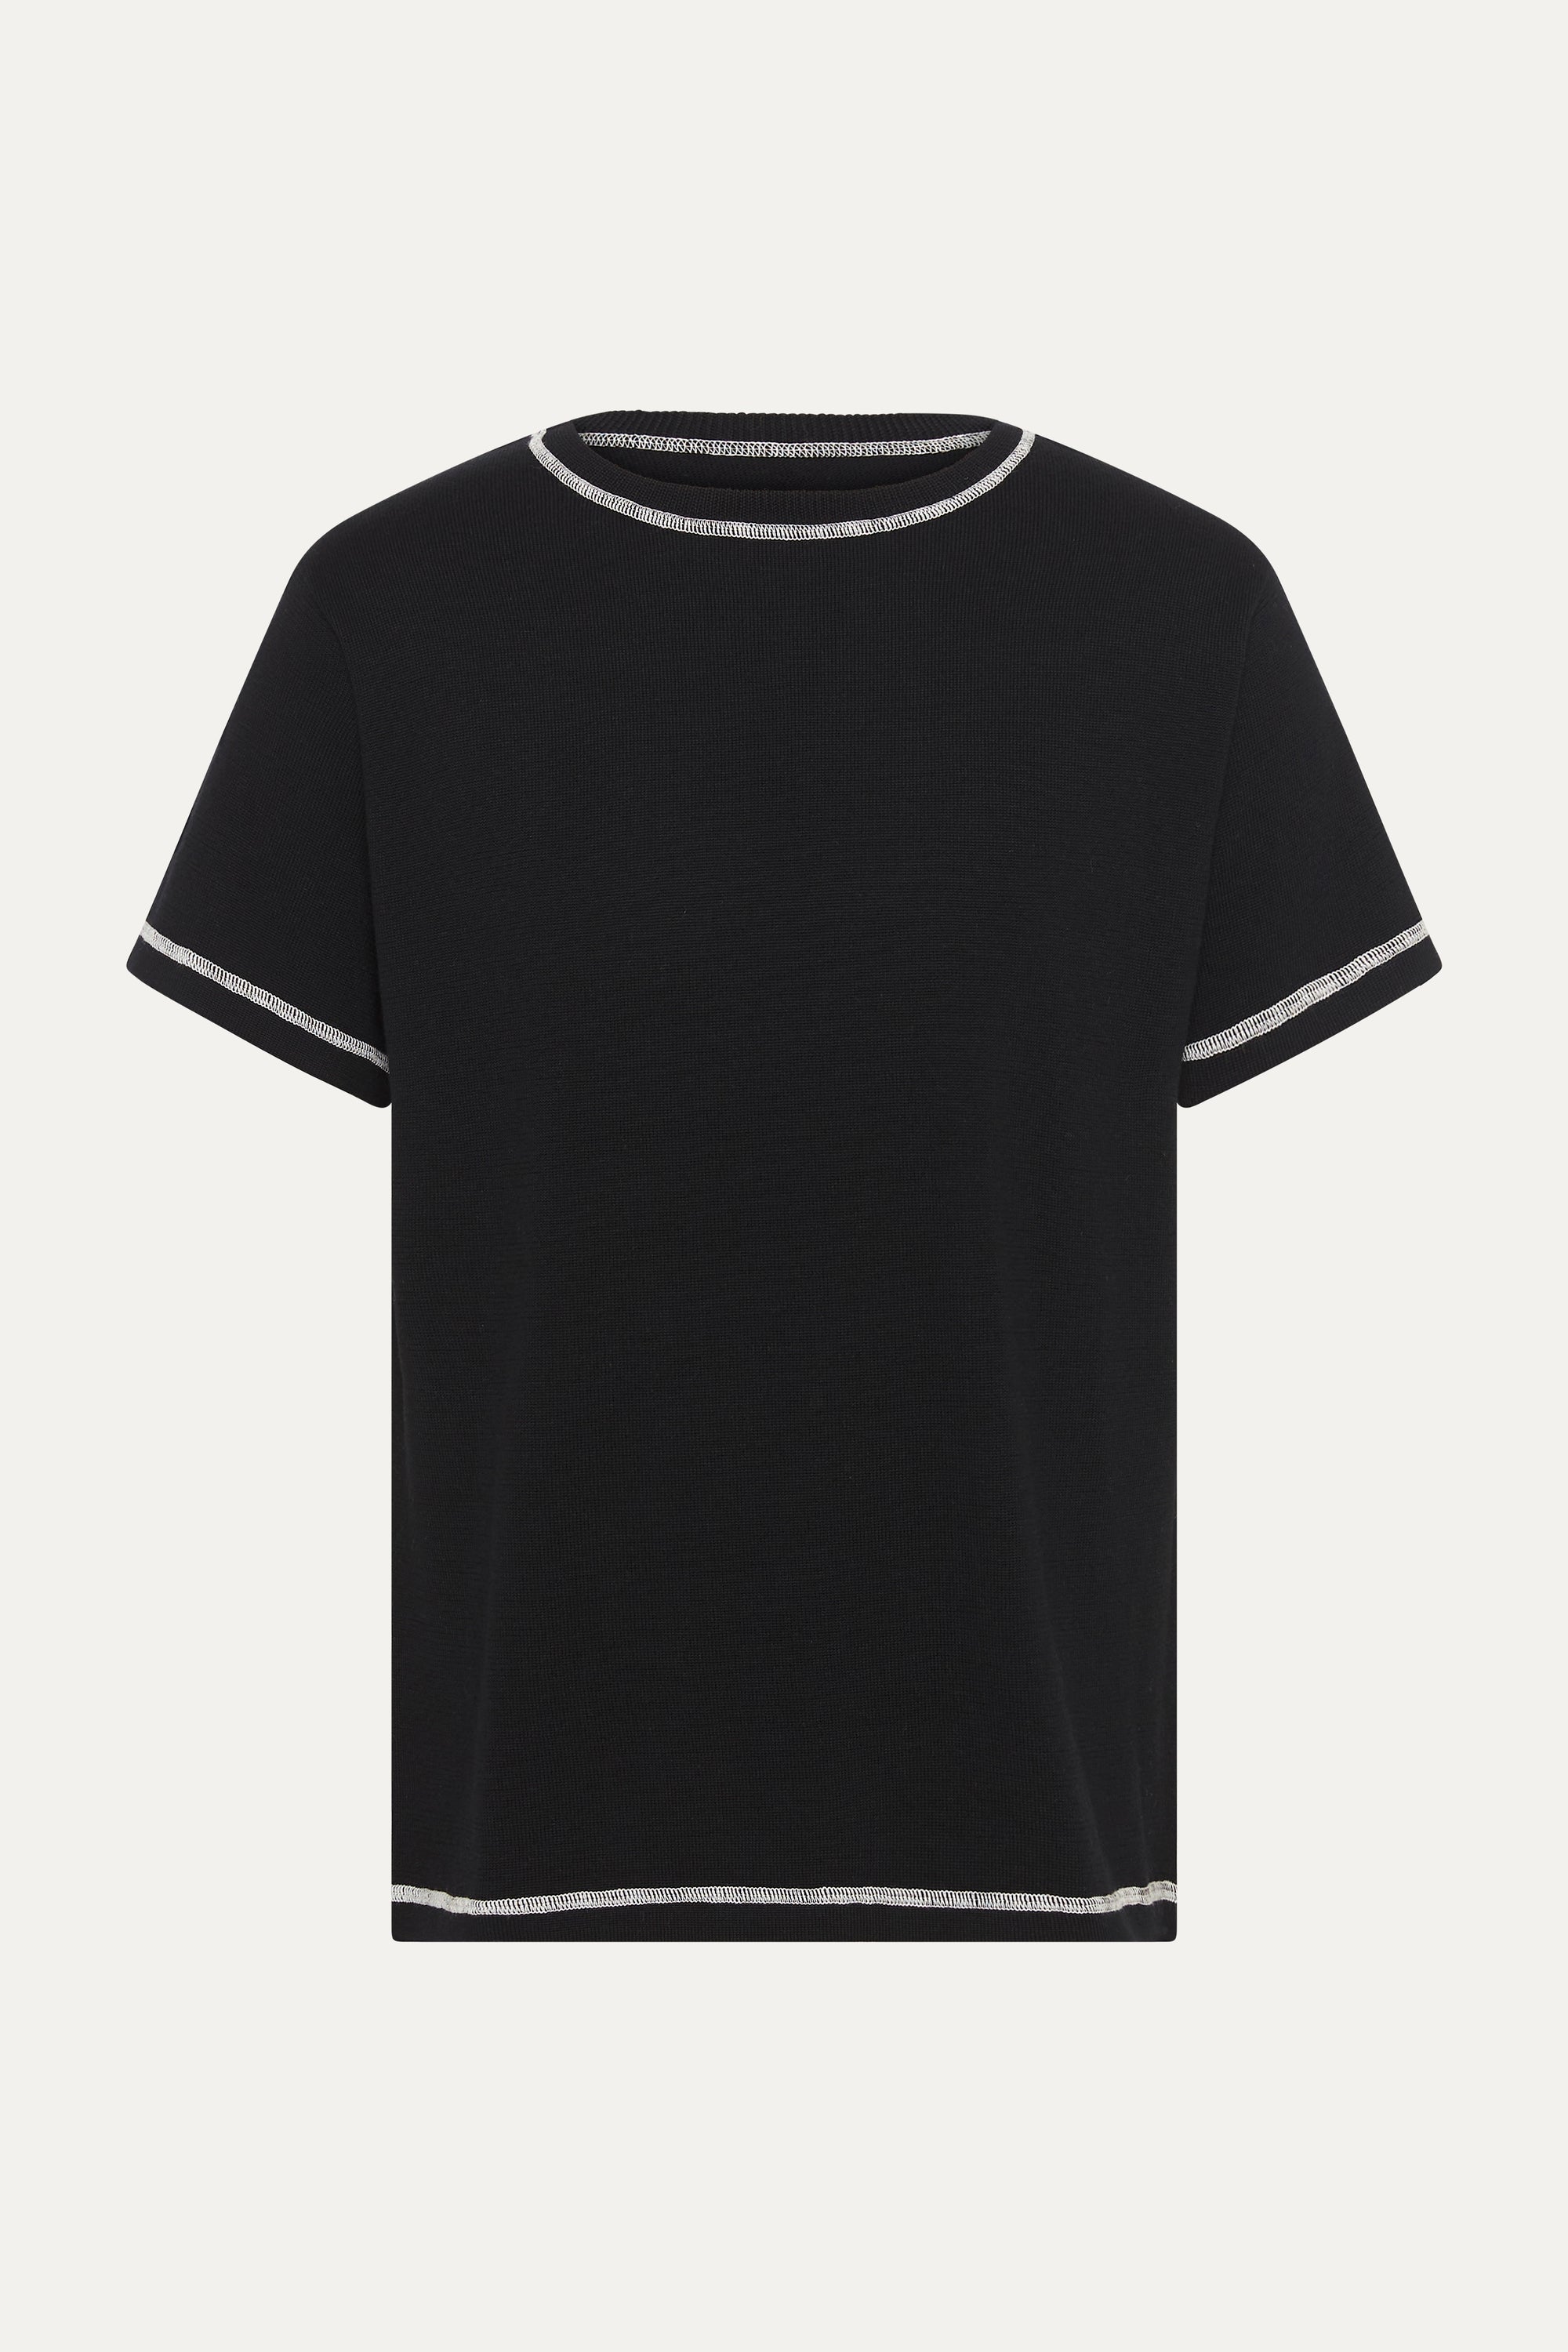 S/S T-Shirt In Midnight Black Merino Wool